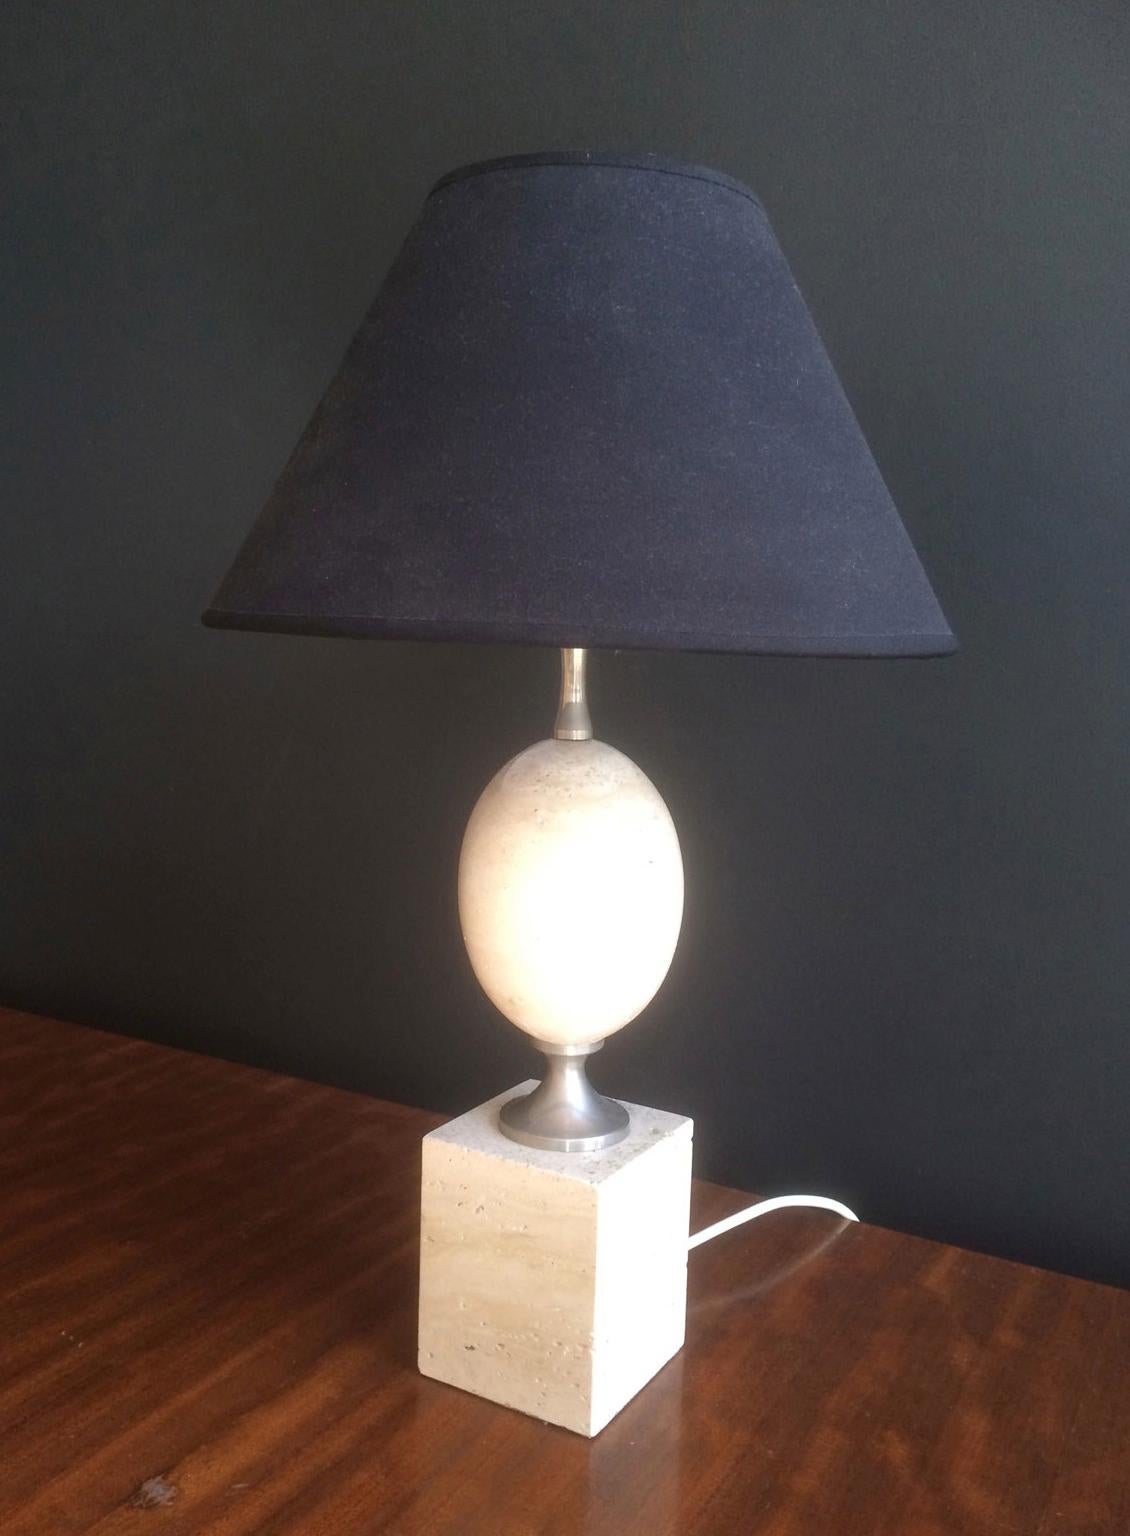 Diese schöne Eierlampe ist aus Travertin und Chrom gefertigt. Es handelt sich um ein Modell des berühmten Designers Philippe Barbier aus der Zeit um 1970.